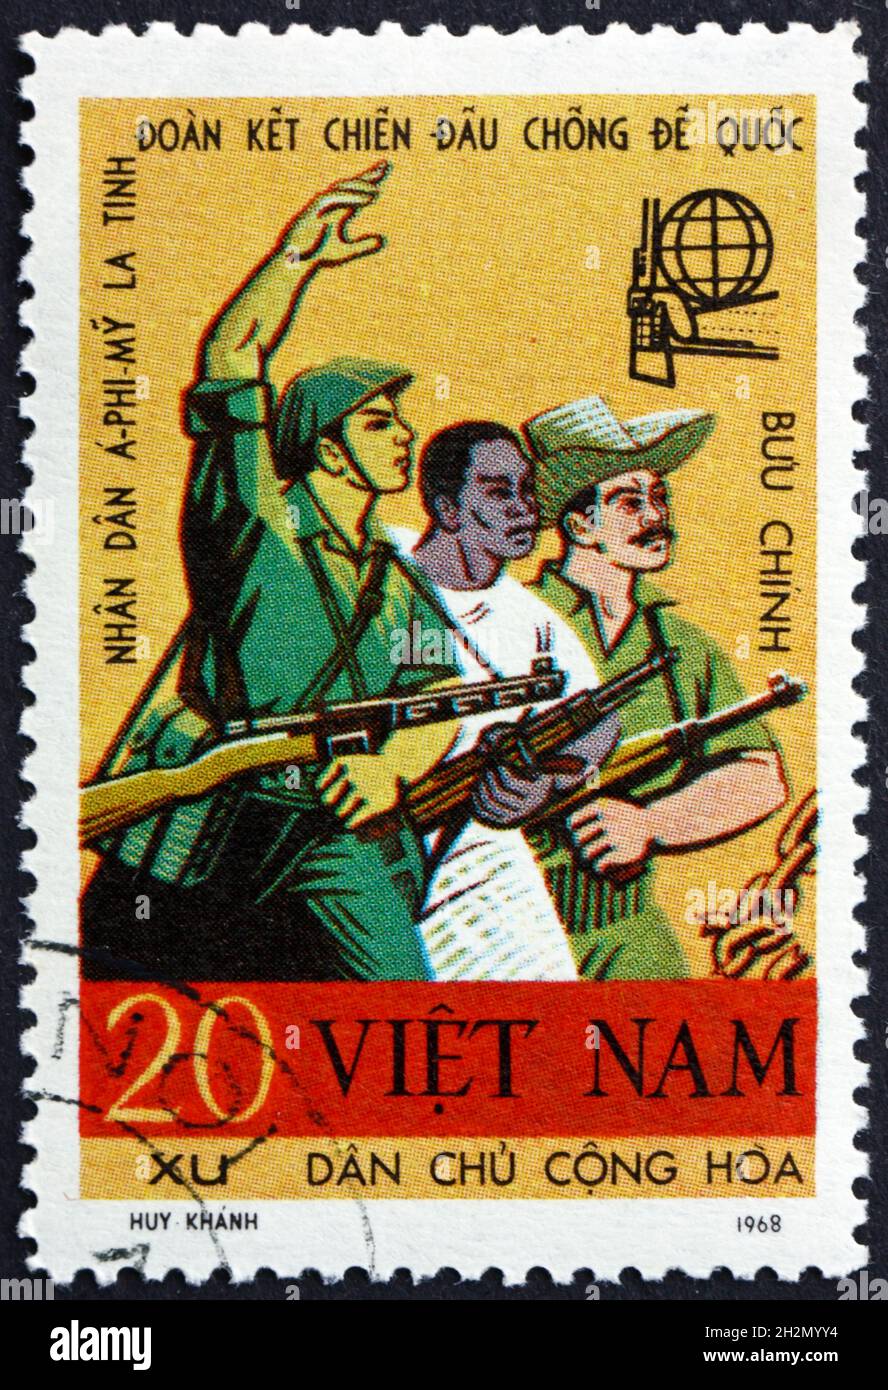 VIETNAM - VERS 1968 : un timbre imprimé au Vietnam montre des soldats asiatiques, africains et latino-américains, la solidarité étrangère avec le Vietnam, vers 1968 Banque D'Images